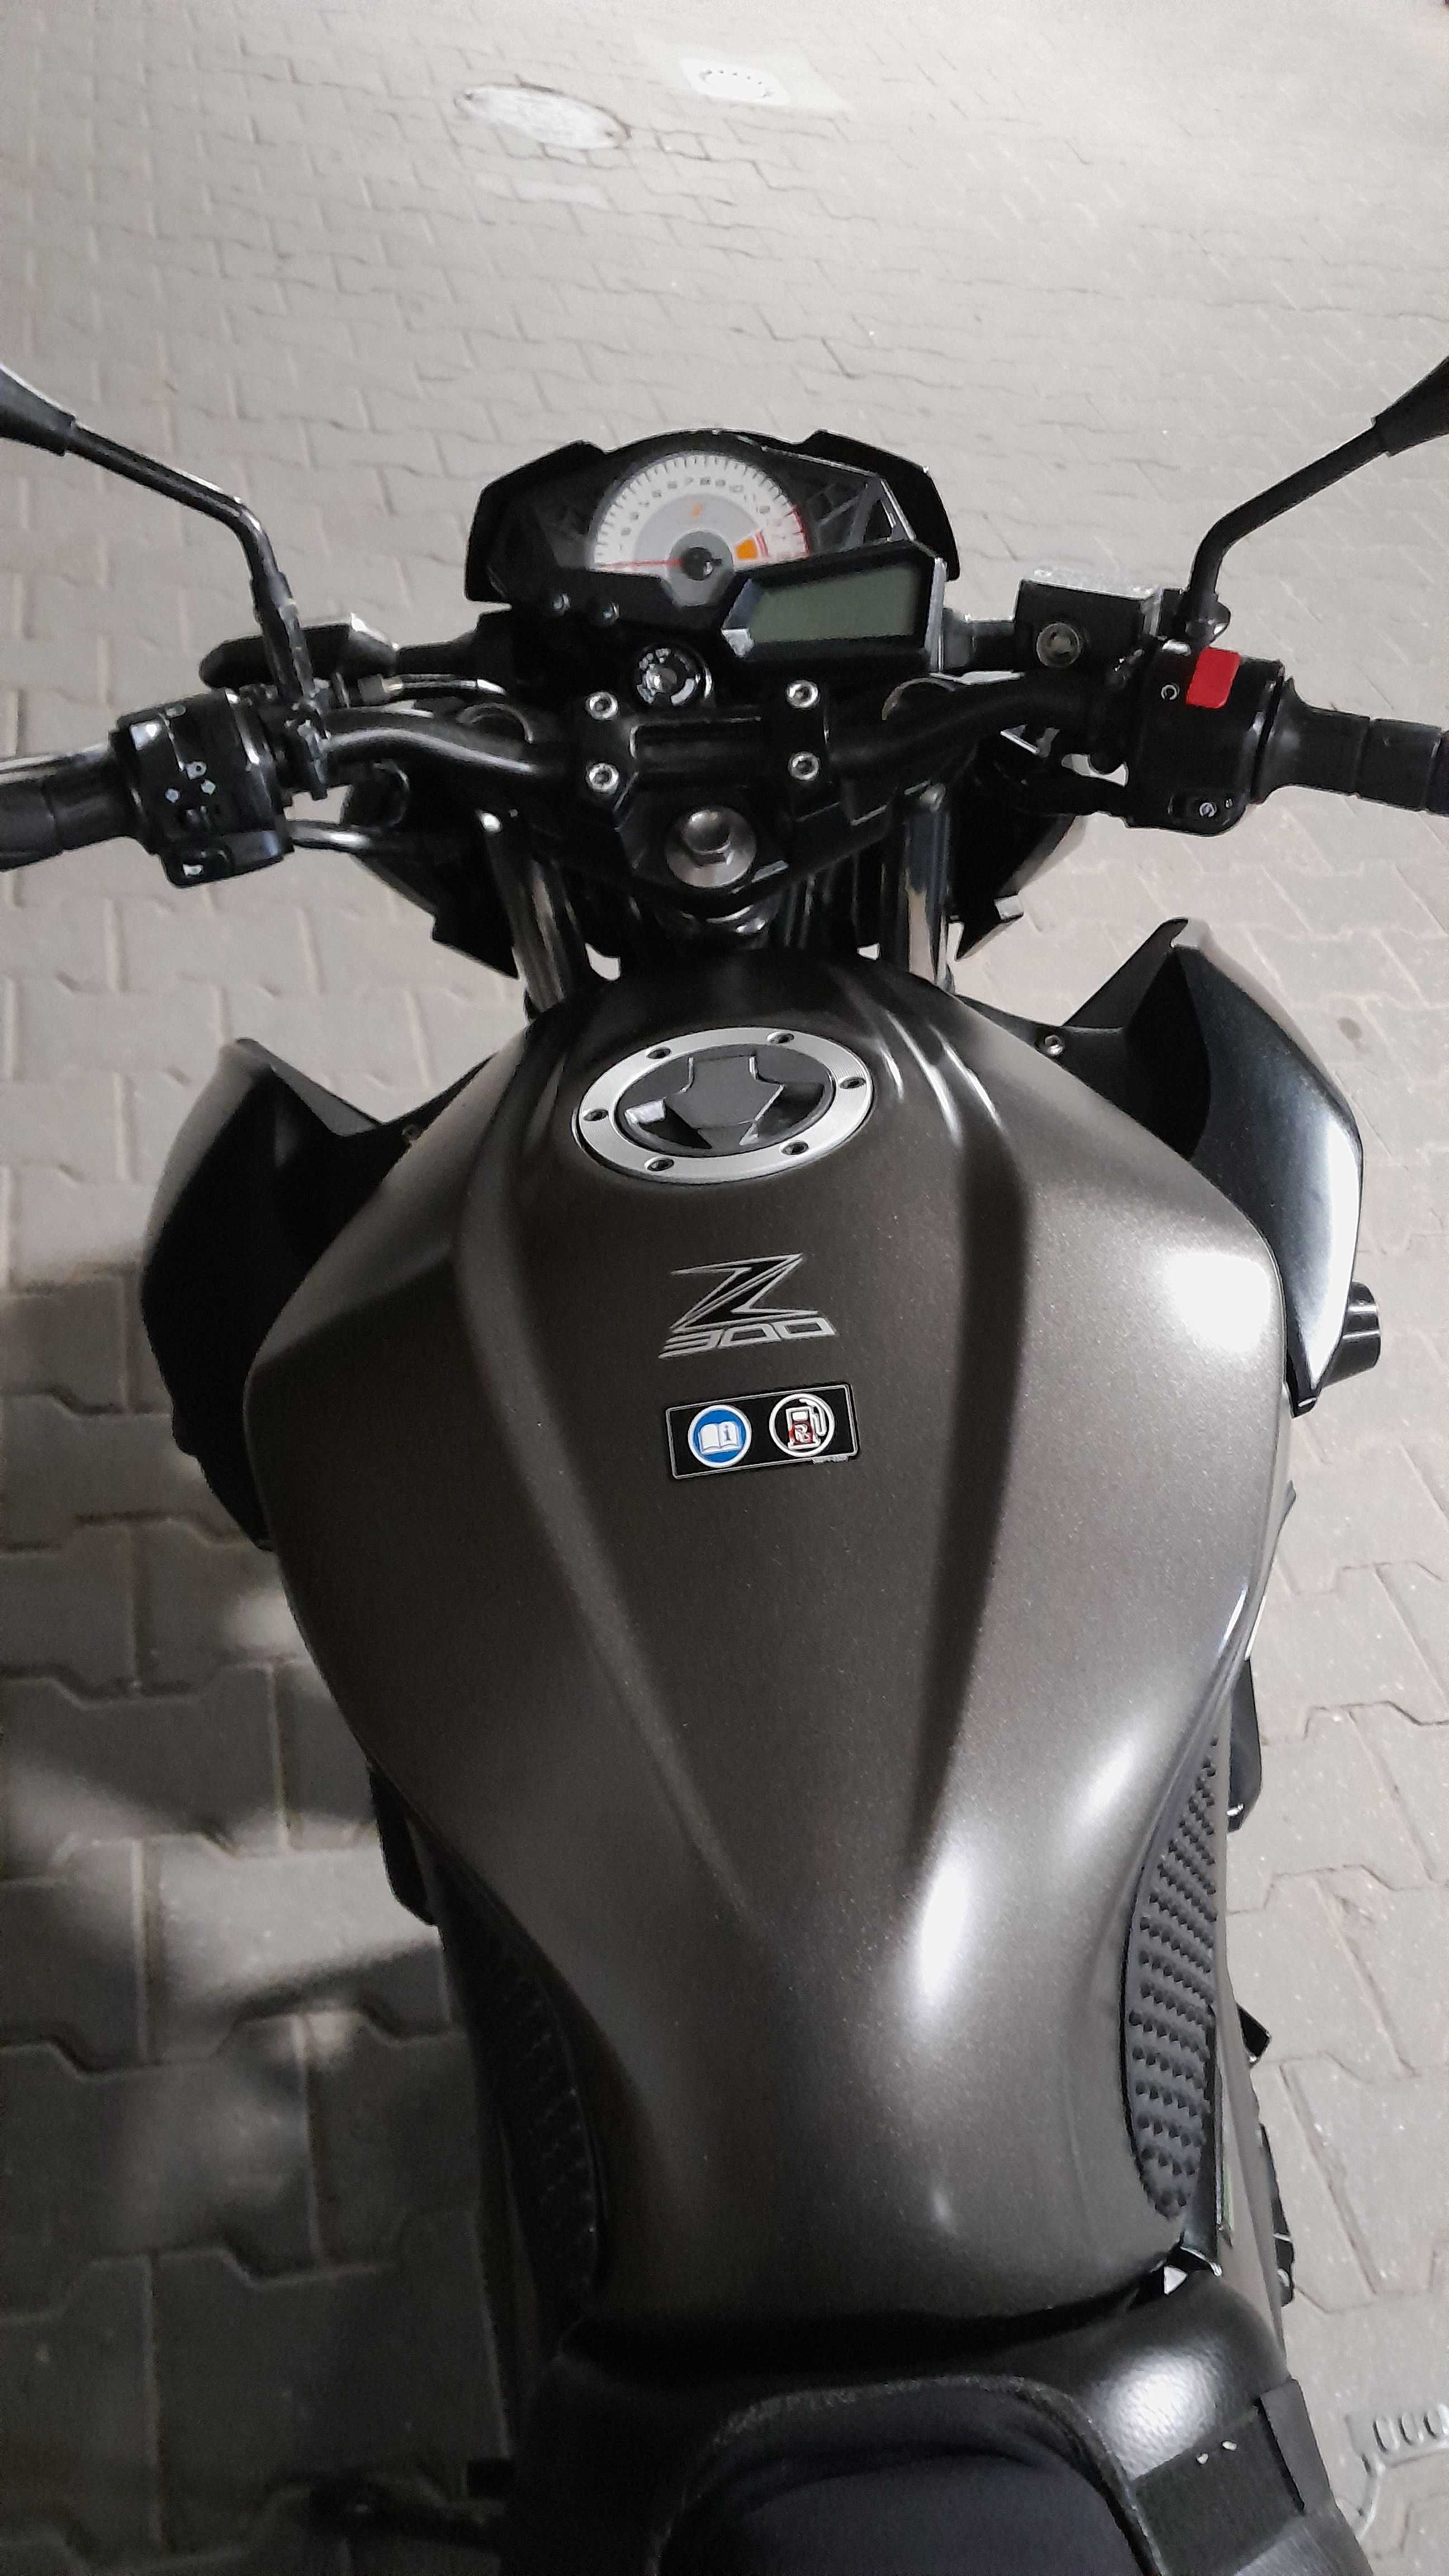 Kawasaki Z300 ABS 2015 rok. Nowe OC i BT Możliwa zamiana.